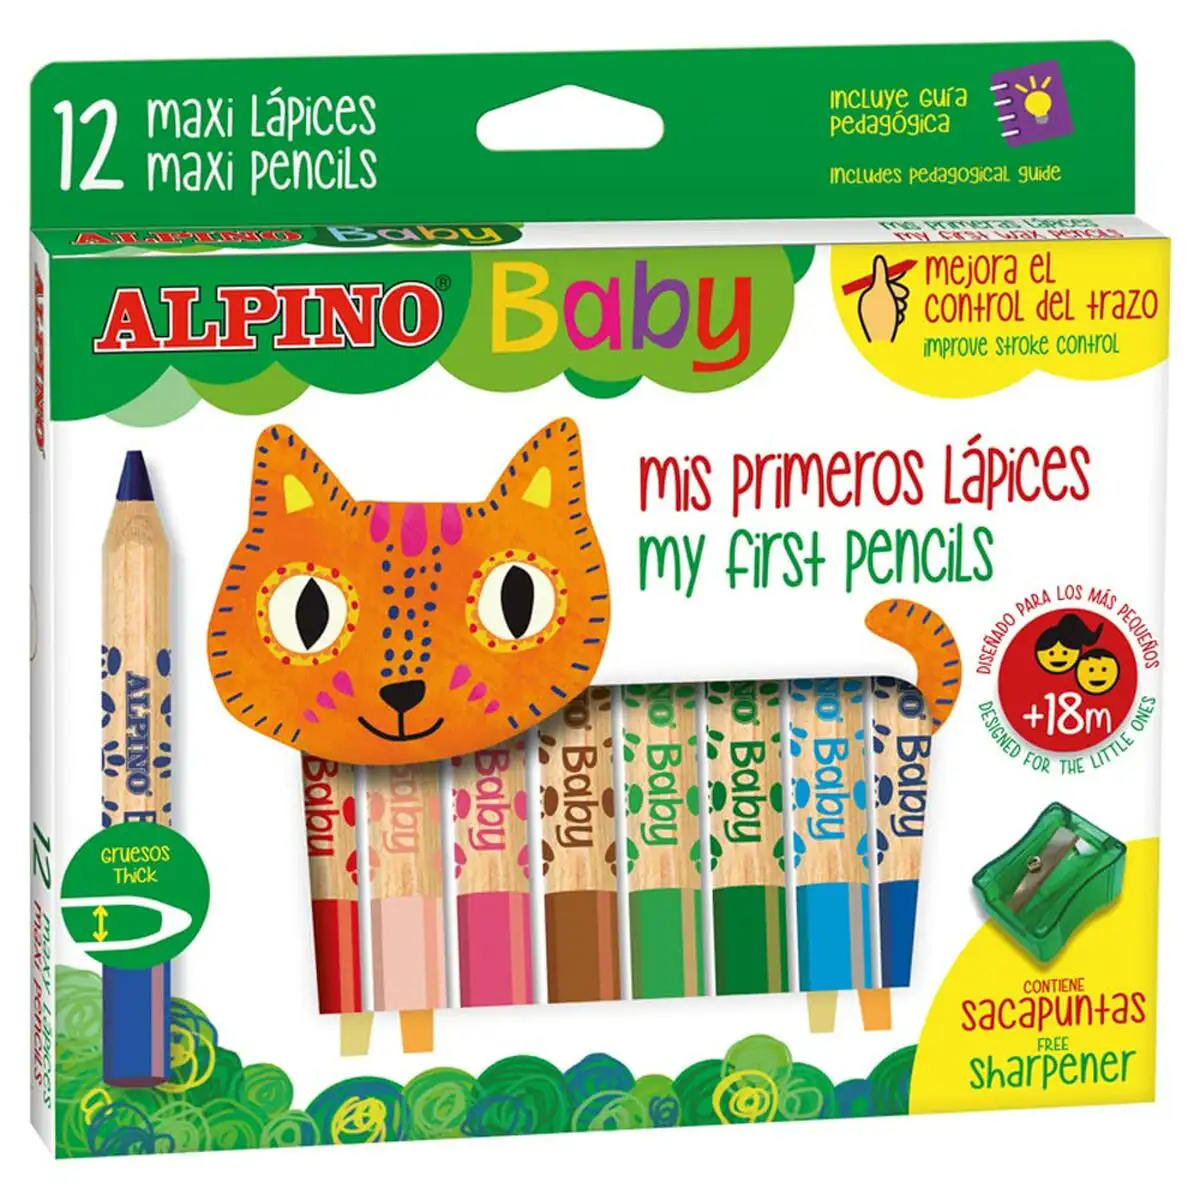 Crayons de couleur alpino baby multicouleur 12 pieces_7319. Découvrez DIAYTAR SENEGAL - Là où le Choix Rencontre la Qualité. Parcourez notre gamme diversifiée et choisissez parmi des produits conçus pour exceller dans tous les aspects de votre vie.